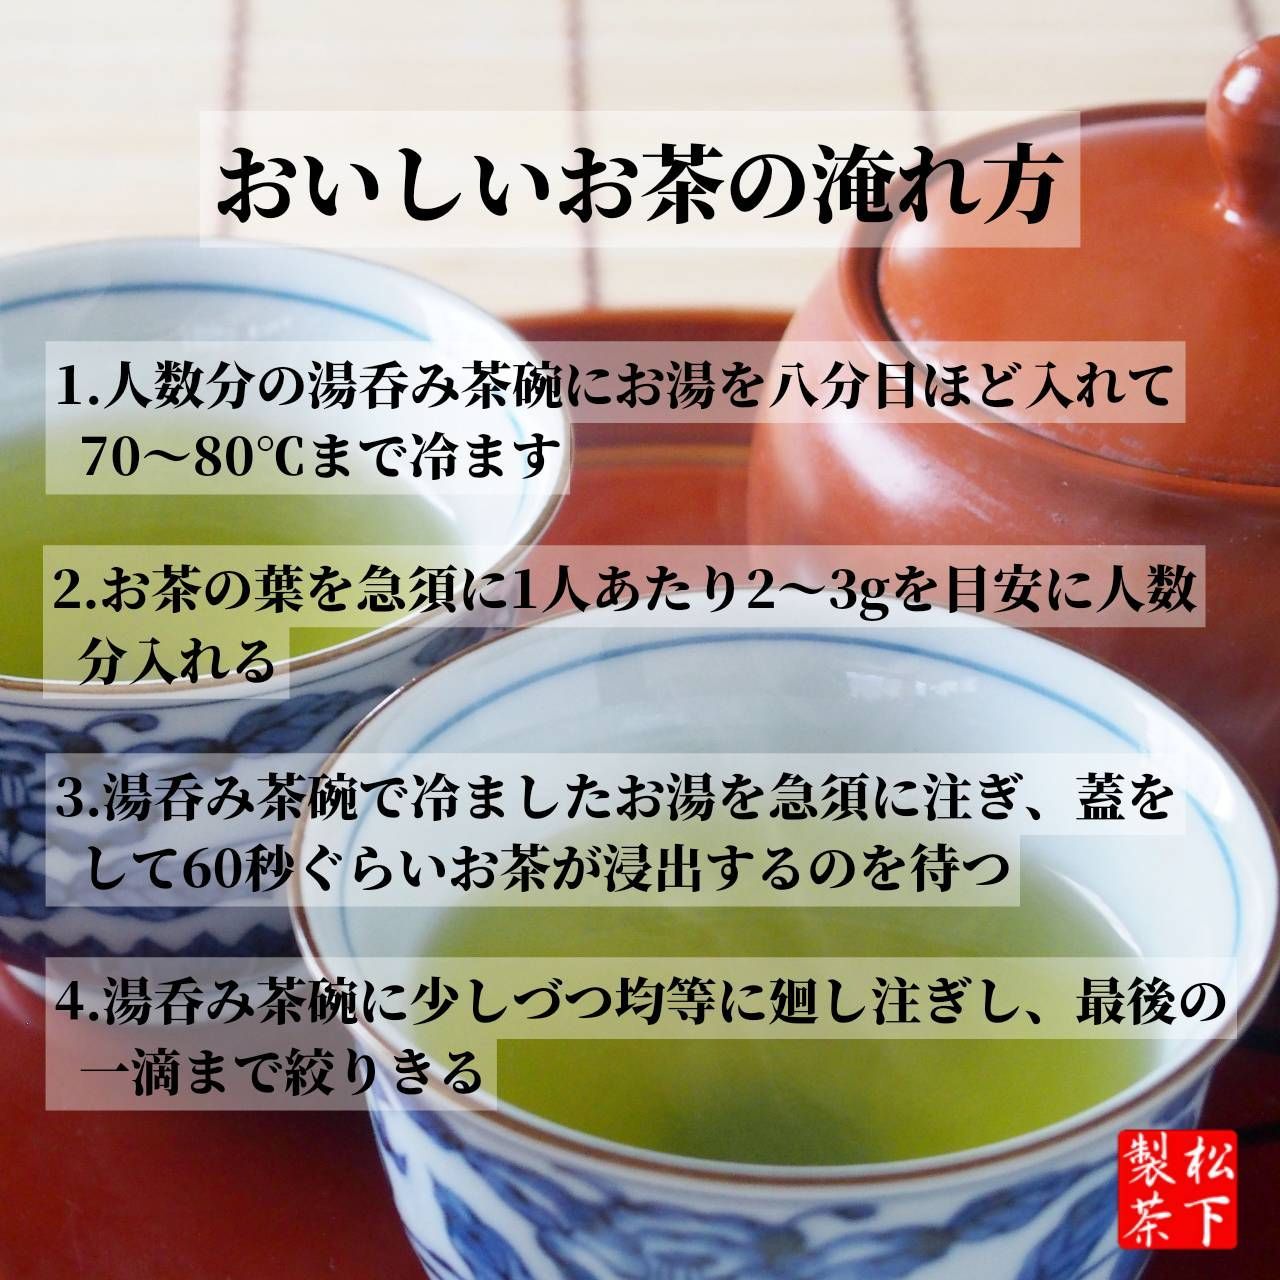 【2022年産/希少品種】種子島の有機緑茶『くりたわせ』 茶葉 100g-7